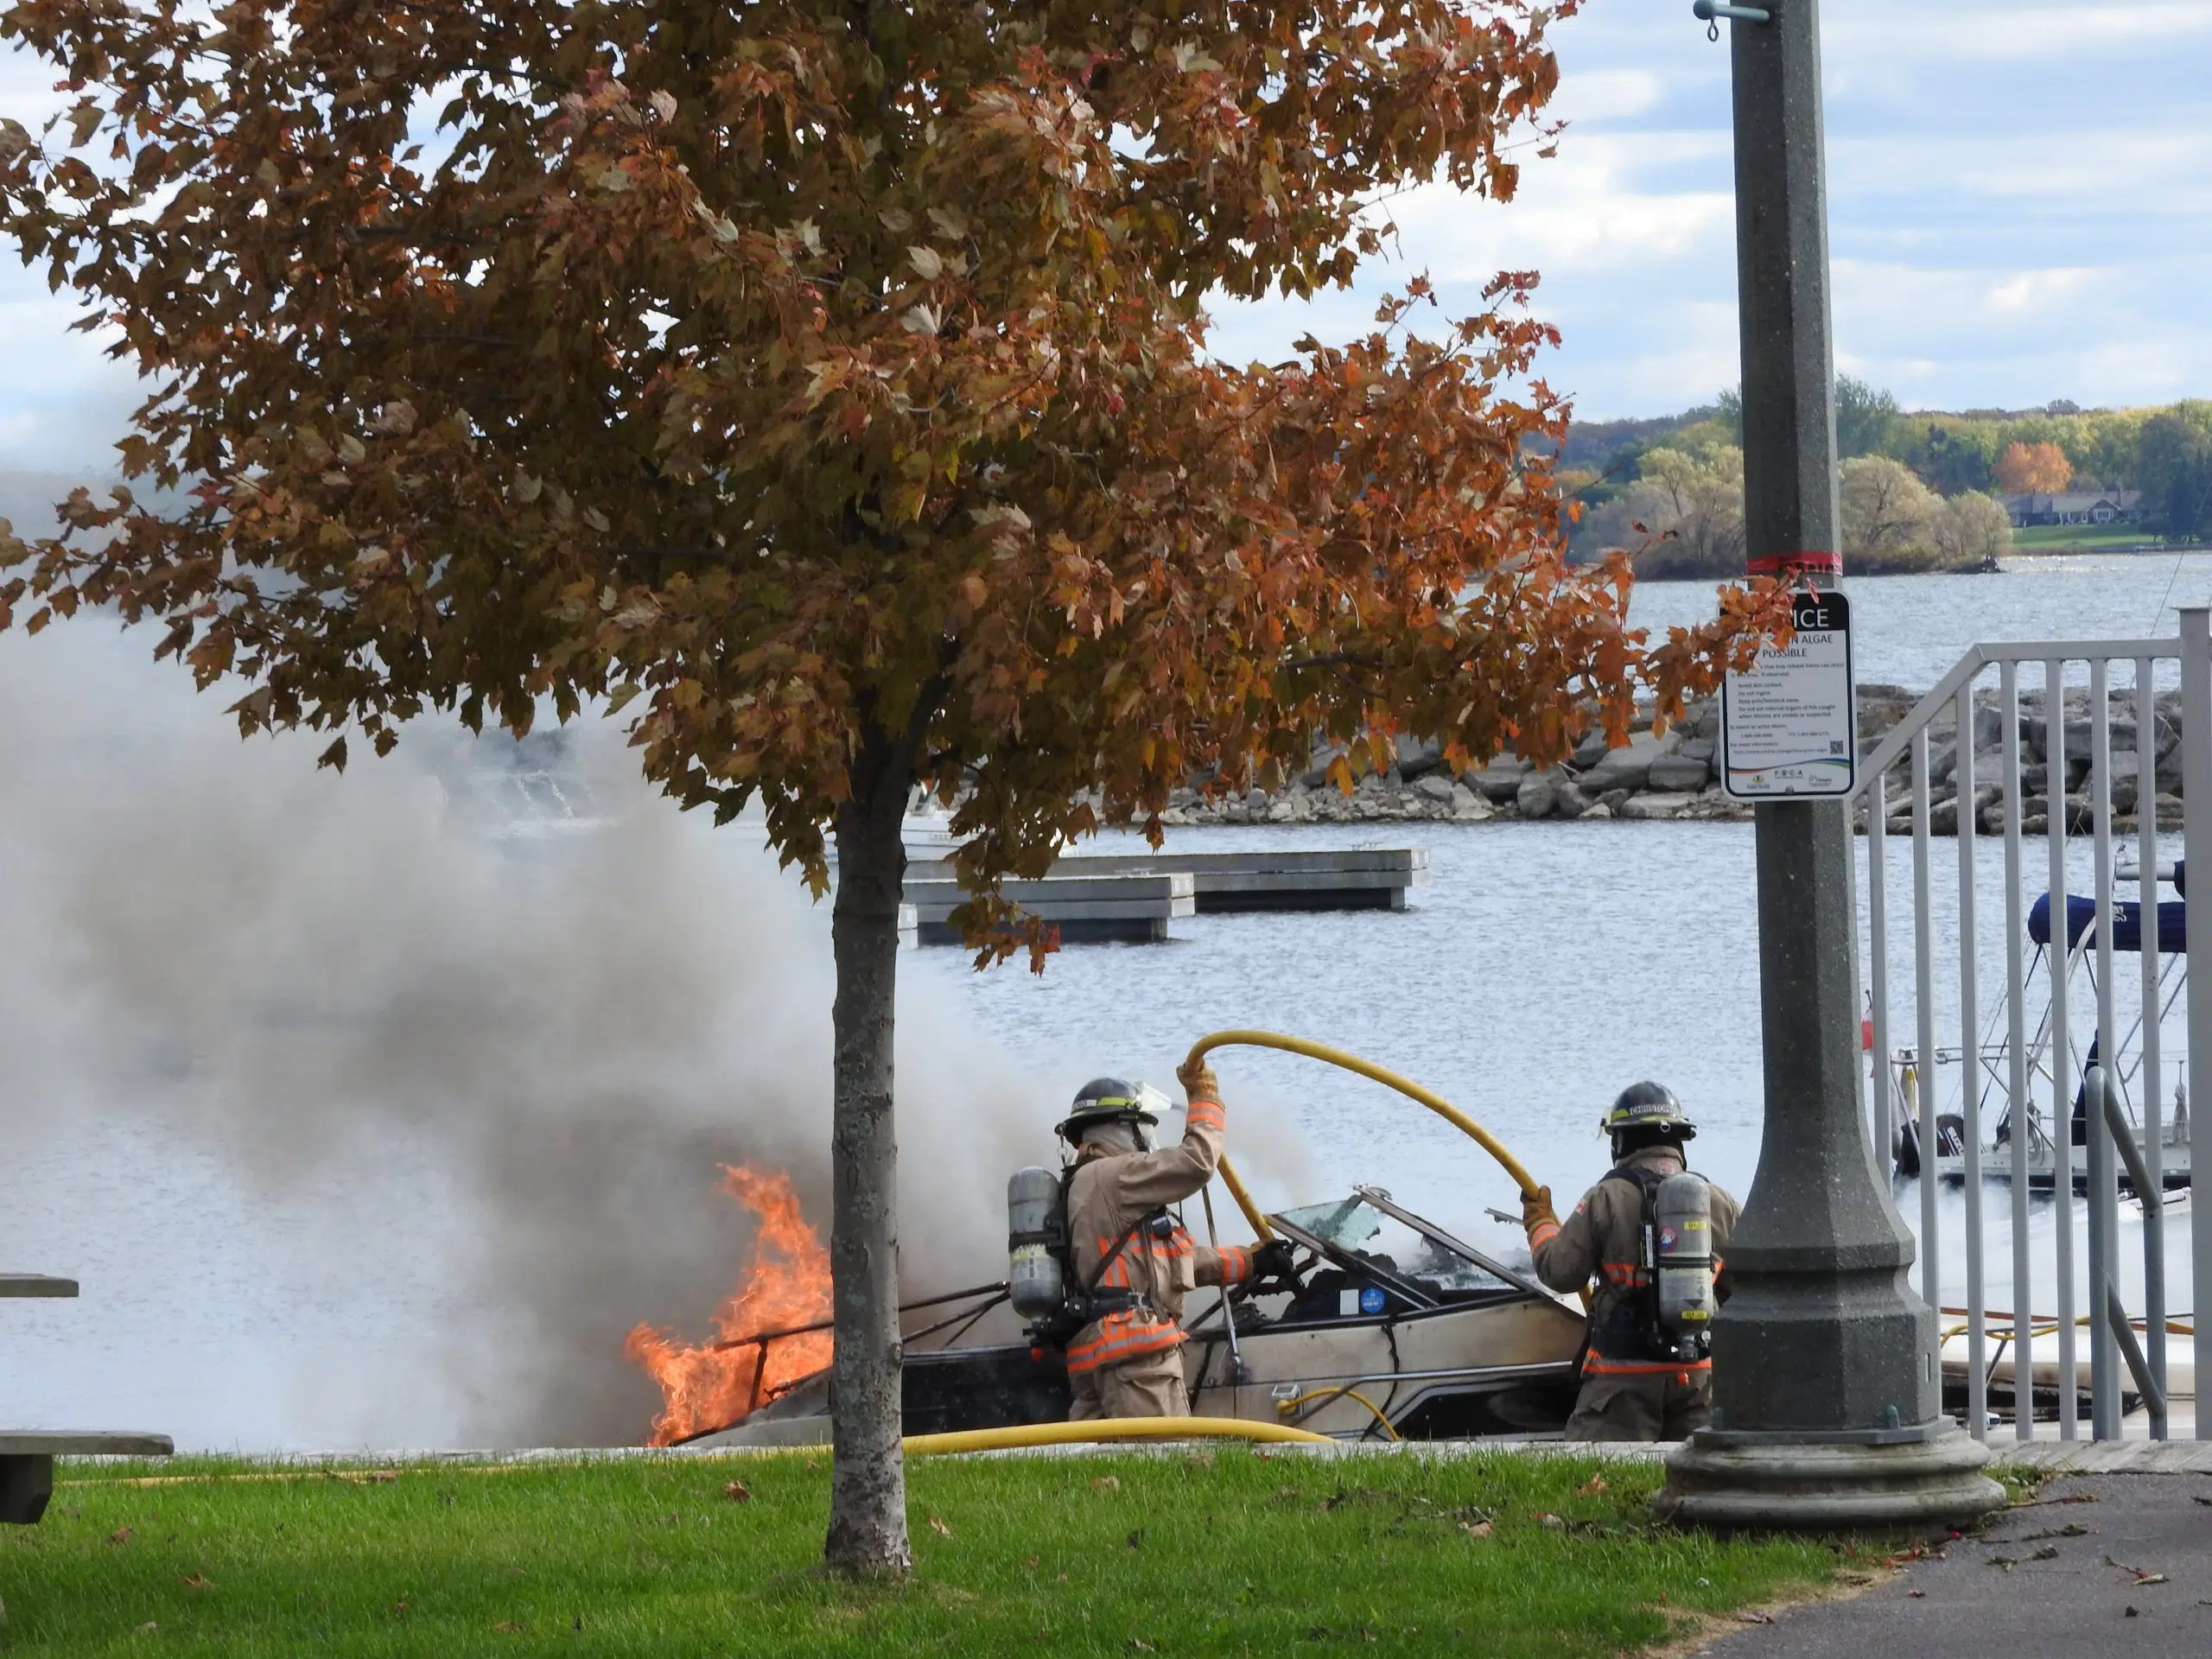 Boat fire at Meyers Pier in Belleville